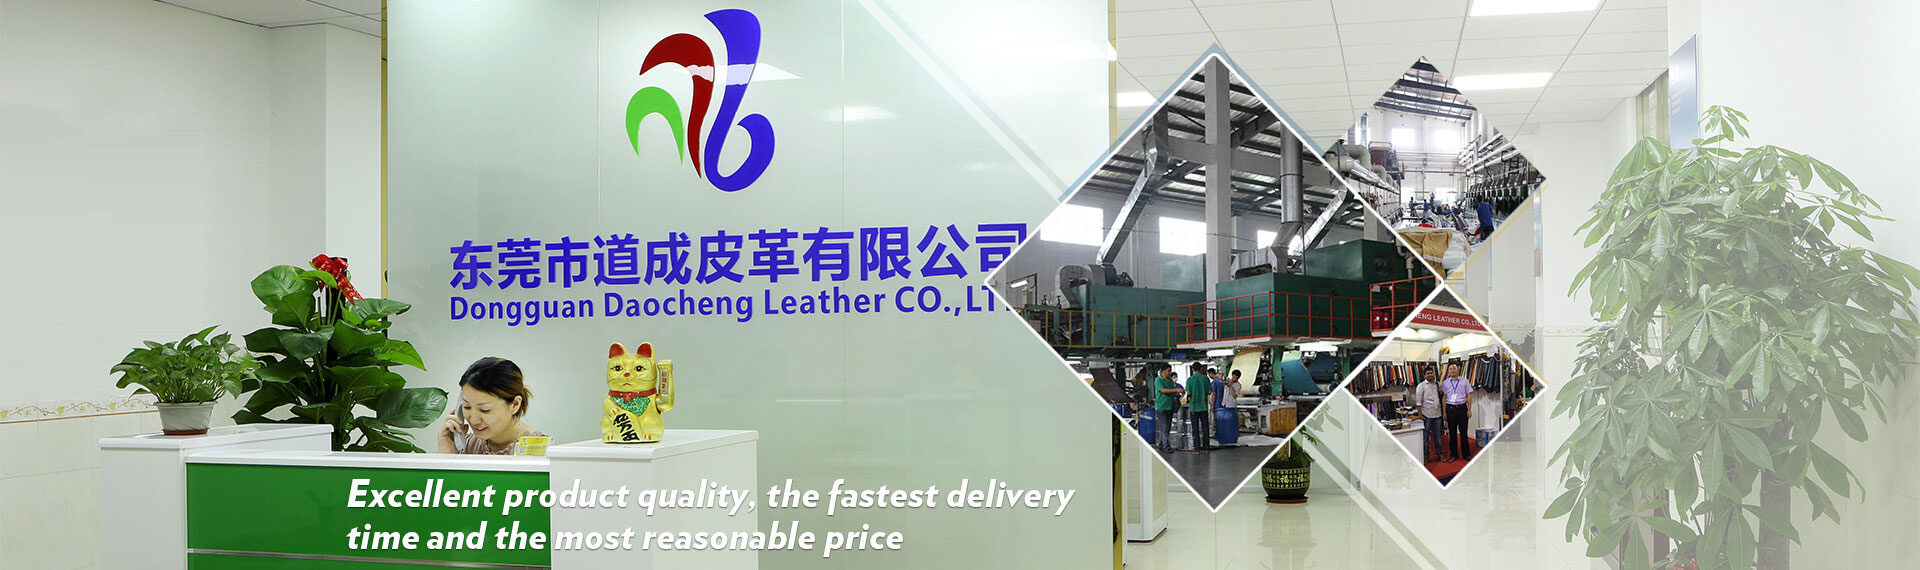 Dongguan Daocheng Leather Co., LTD